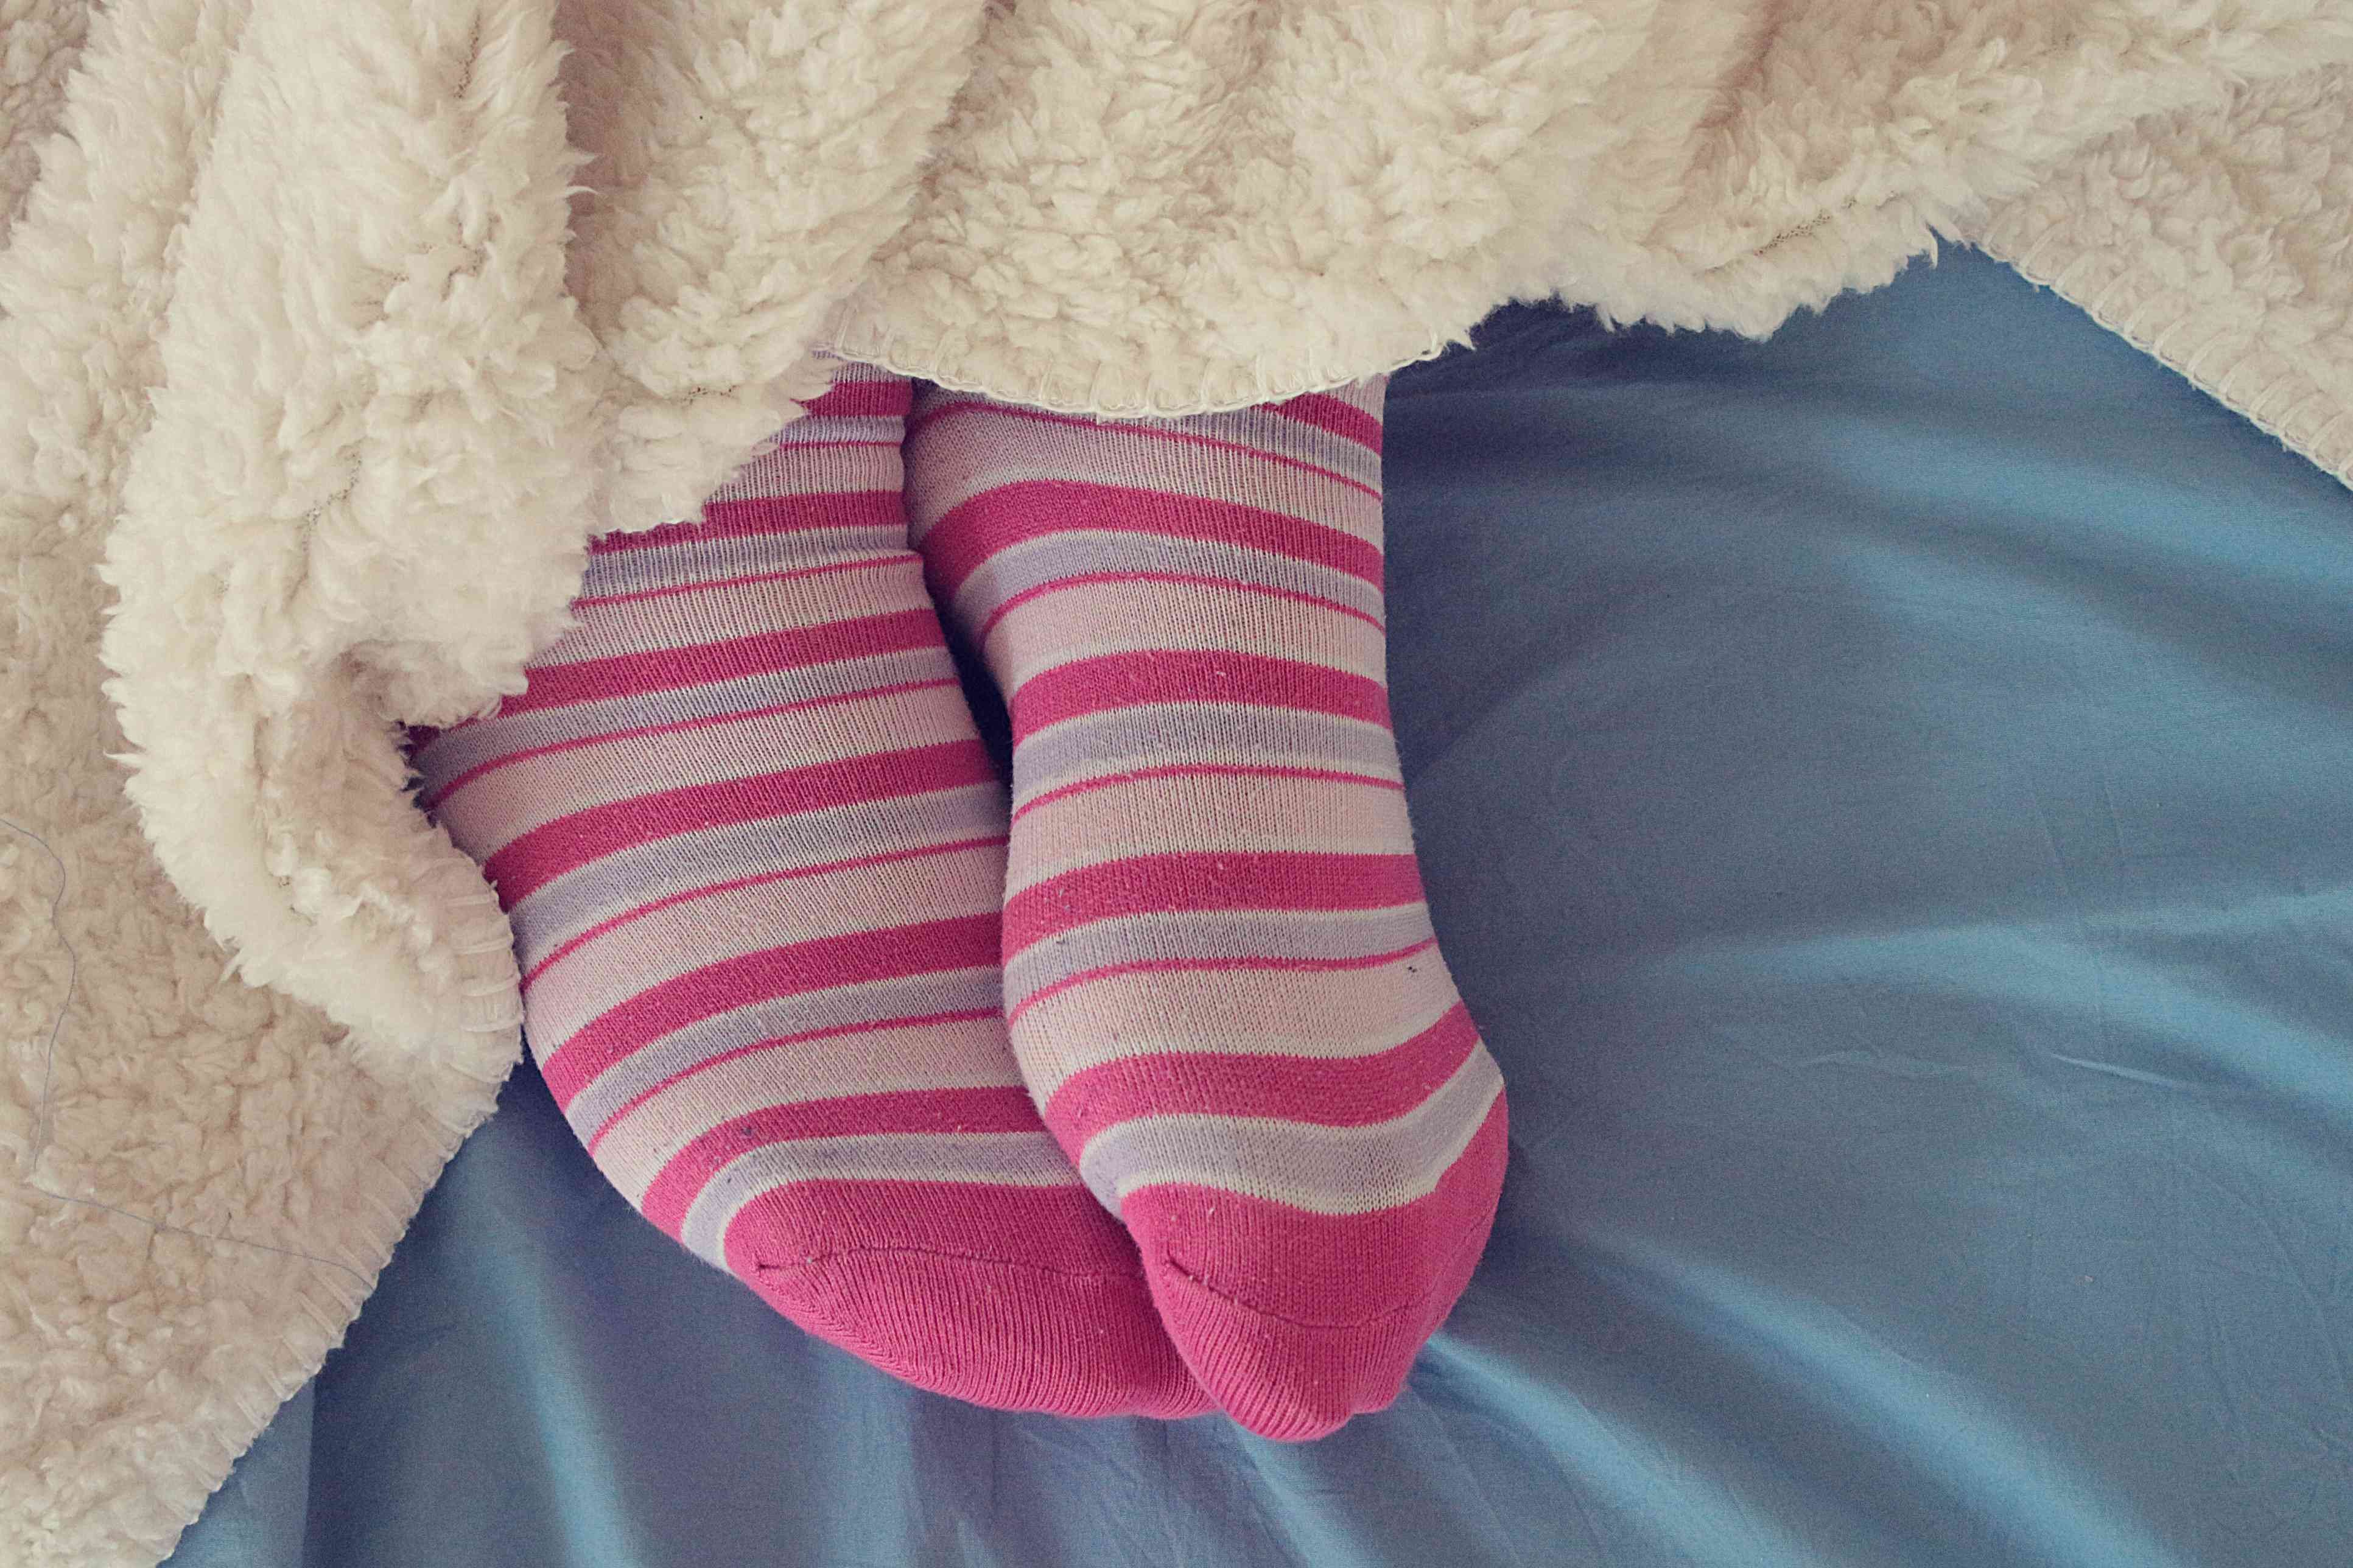 Киска в носочках. Ножки в розовых носочках. Женщина в носках. Женщины в розовых носках. Женские ножки в белых носочках.